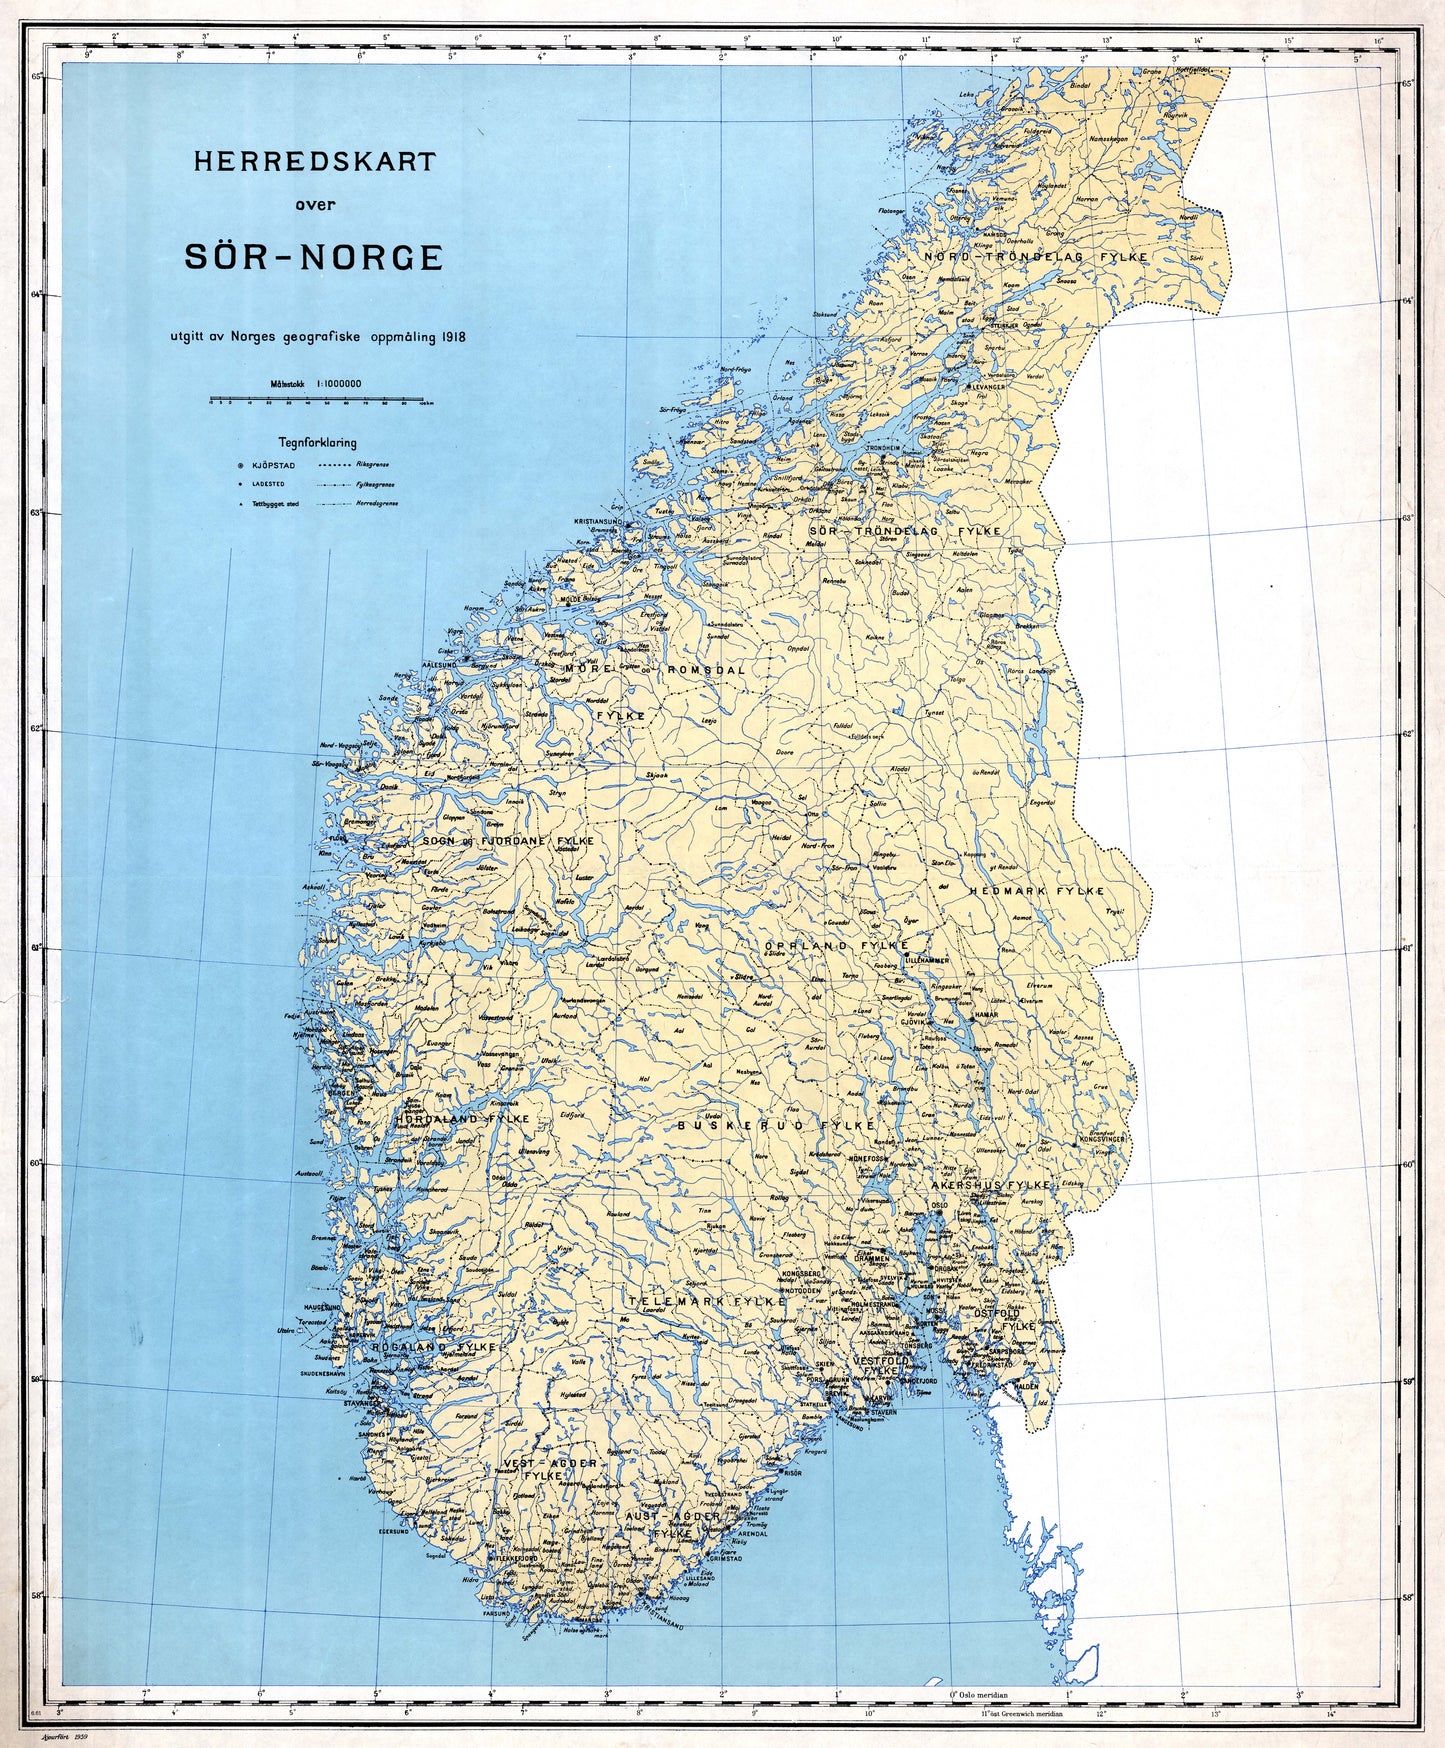 Herredskart over Sør-Norge: Norge